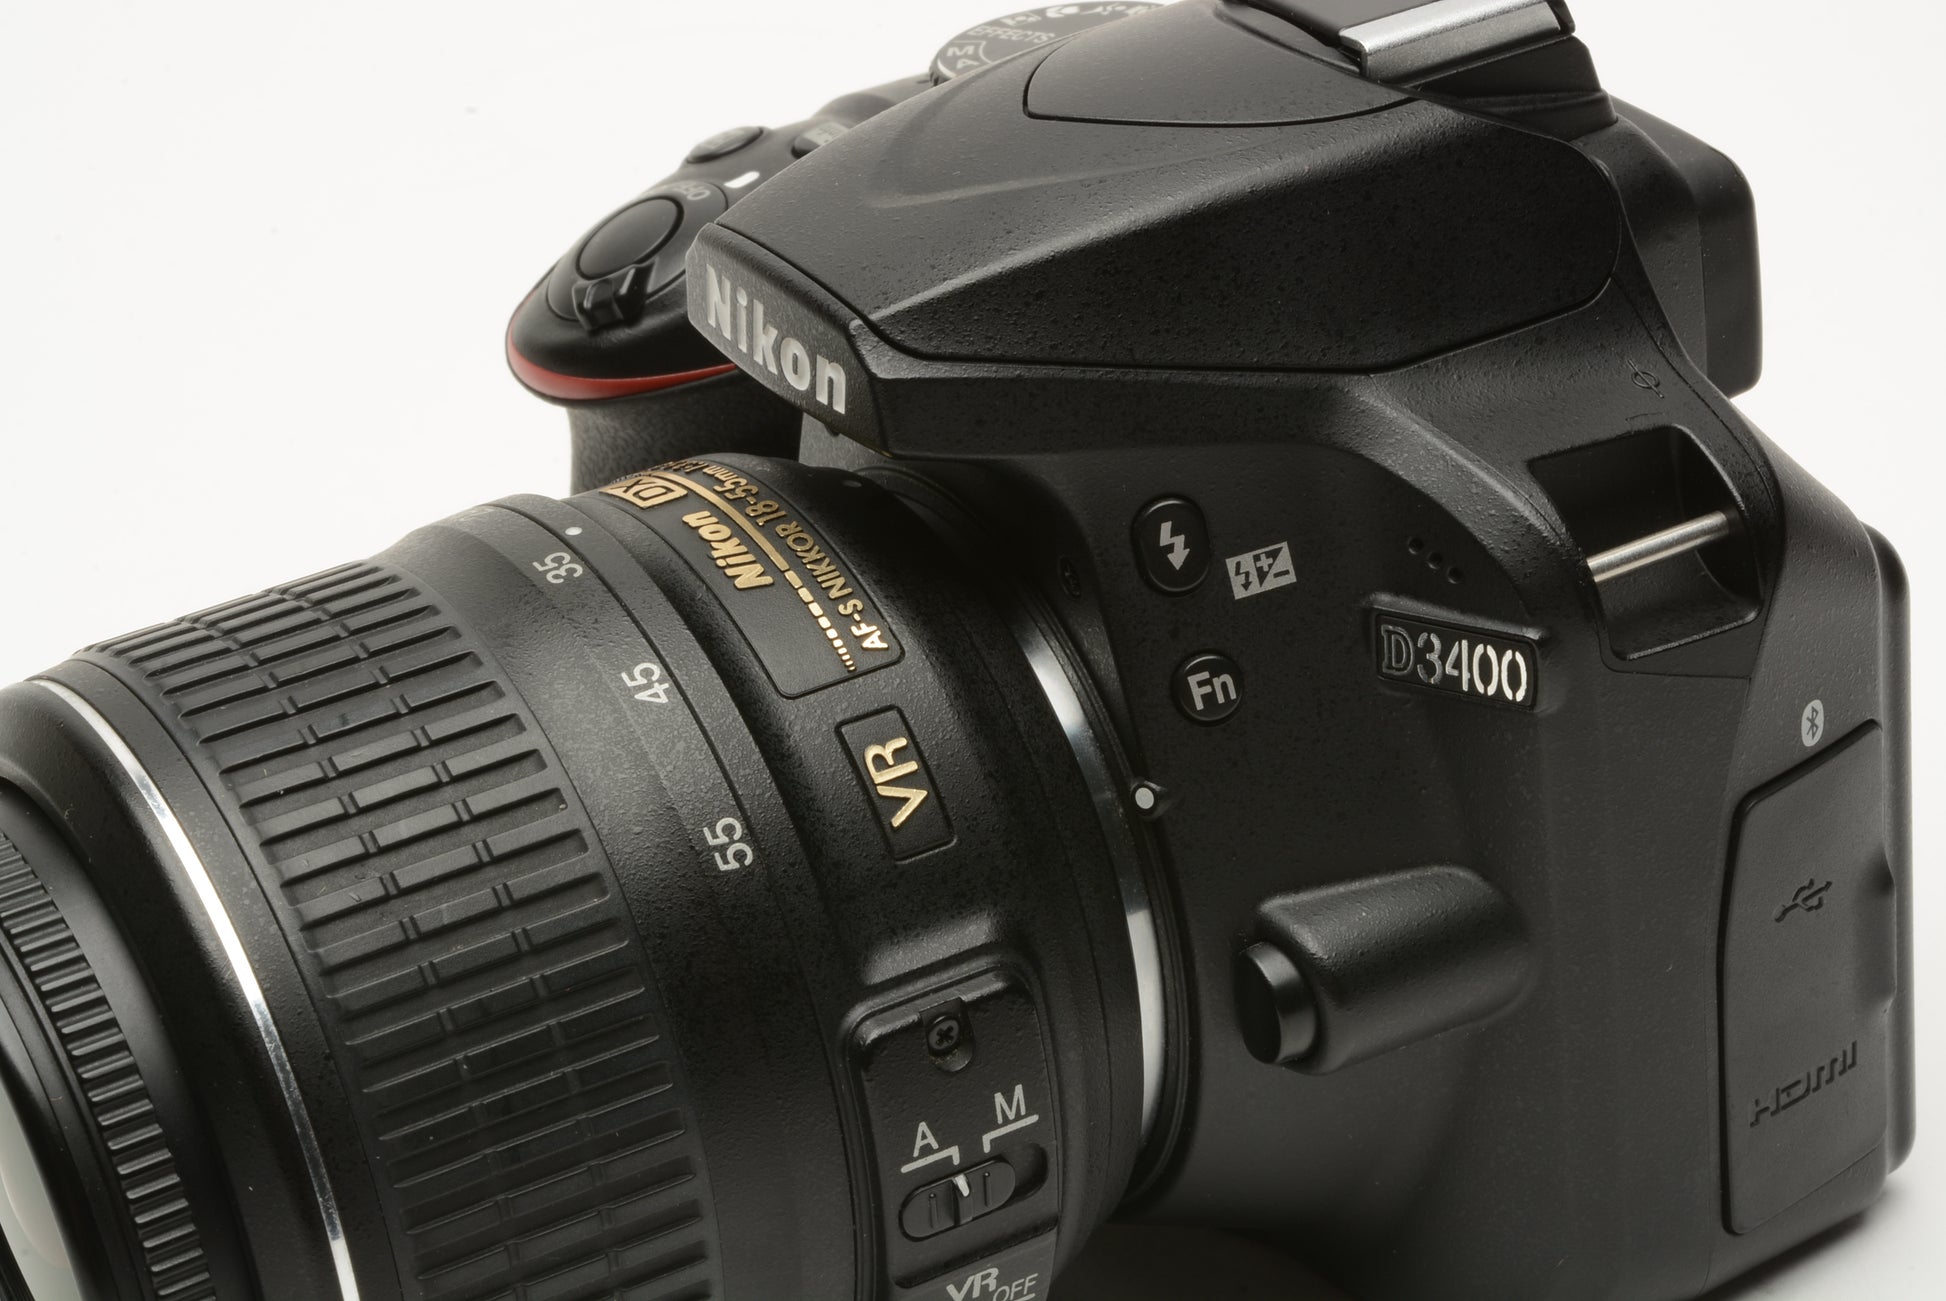 Nikon D3200 DSLR Camera with 18-55mm DX VR Lens Black w/ Charger & Strap